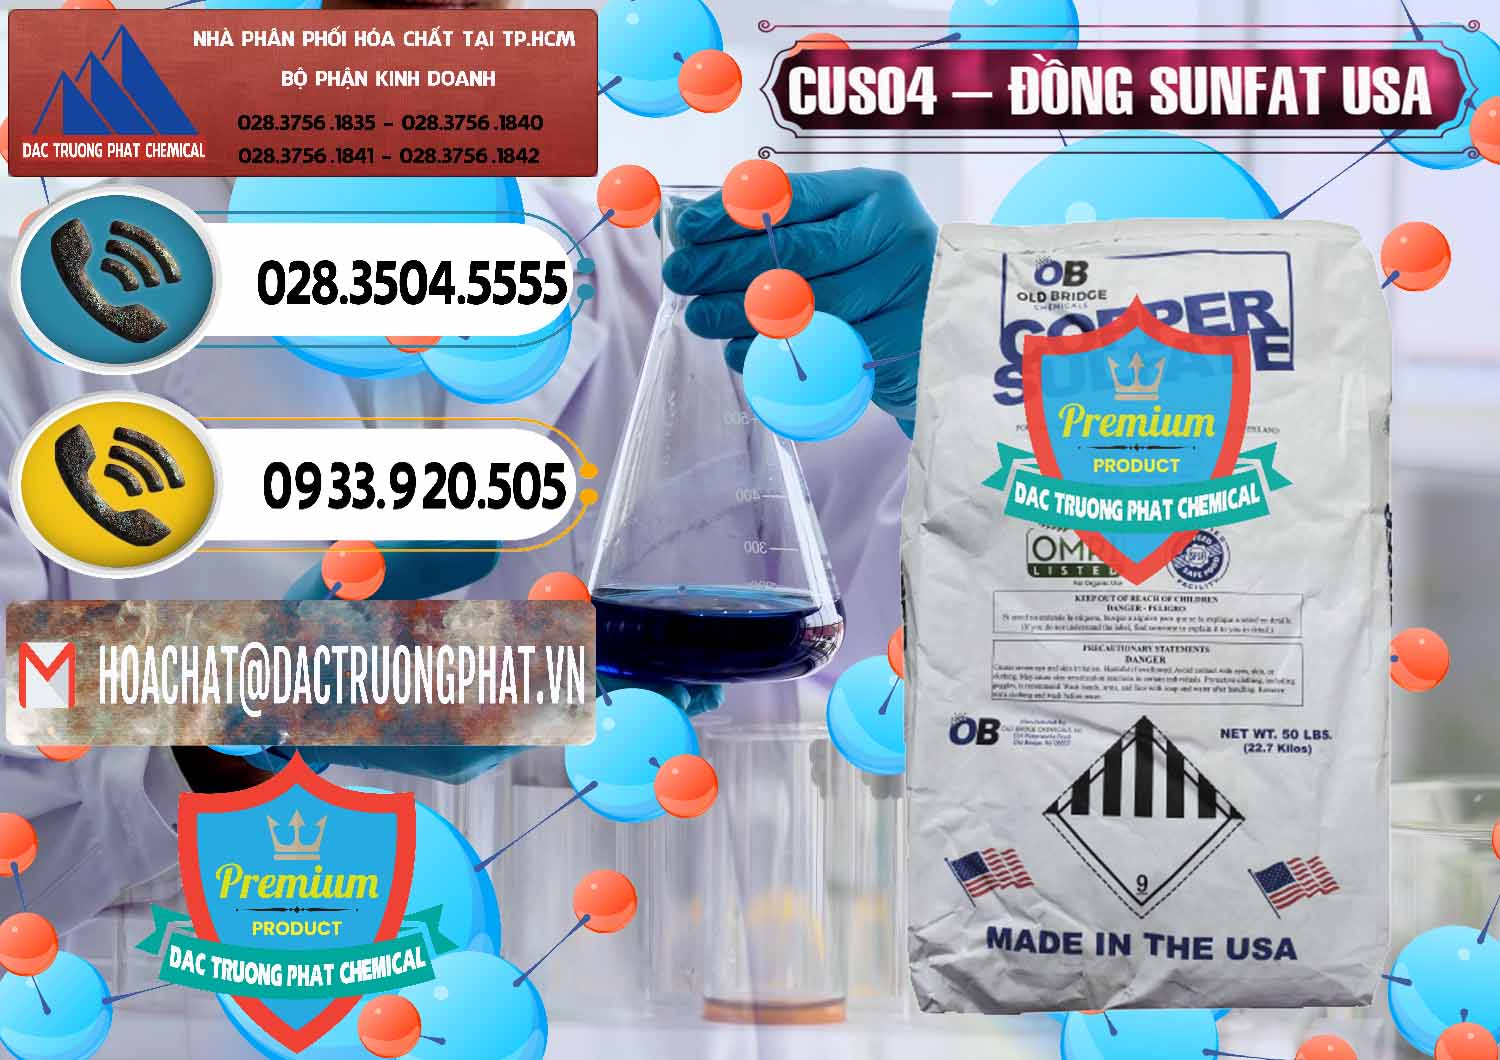 Bán và cung ứng CuSO4 – Đồng Sunfat Mỹ USA - 0479 - Nơi phân phối _ cung cấp hóa chất tại TP.HCM - hoachatdetnhuom.vn